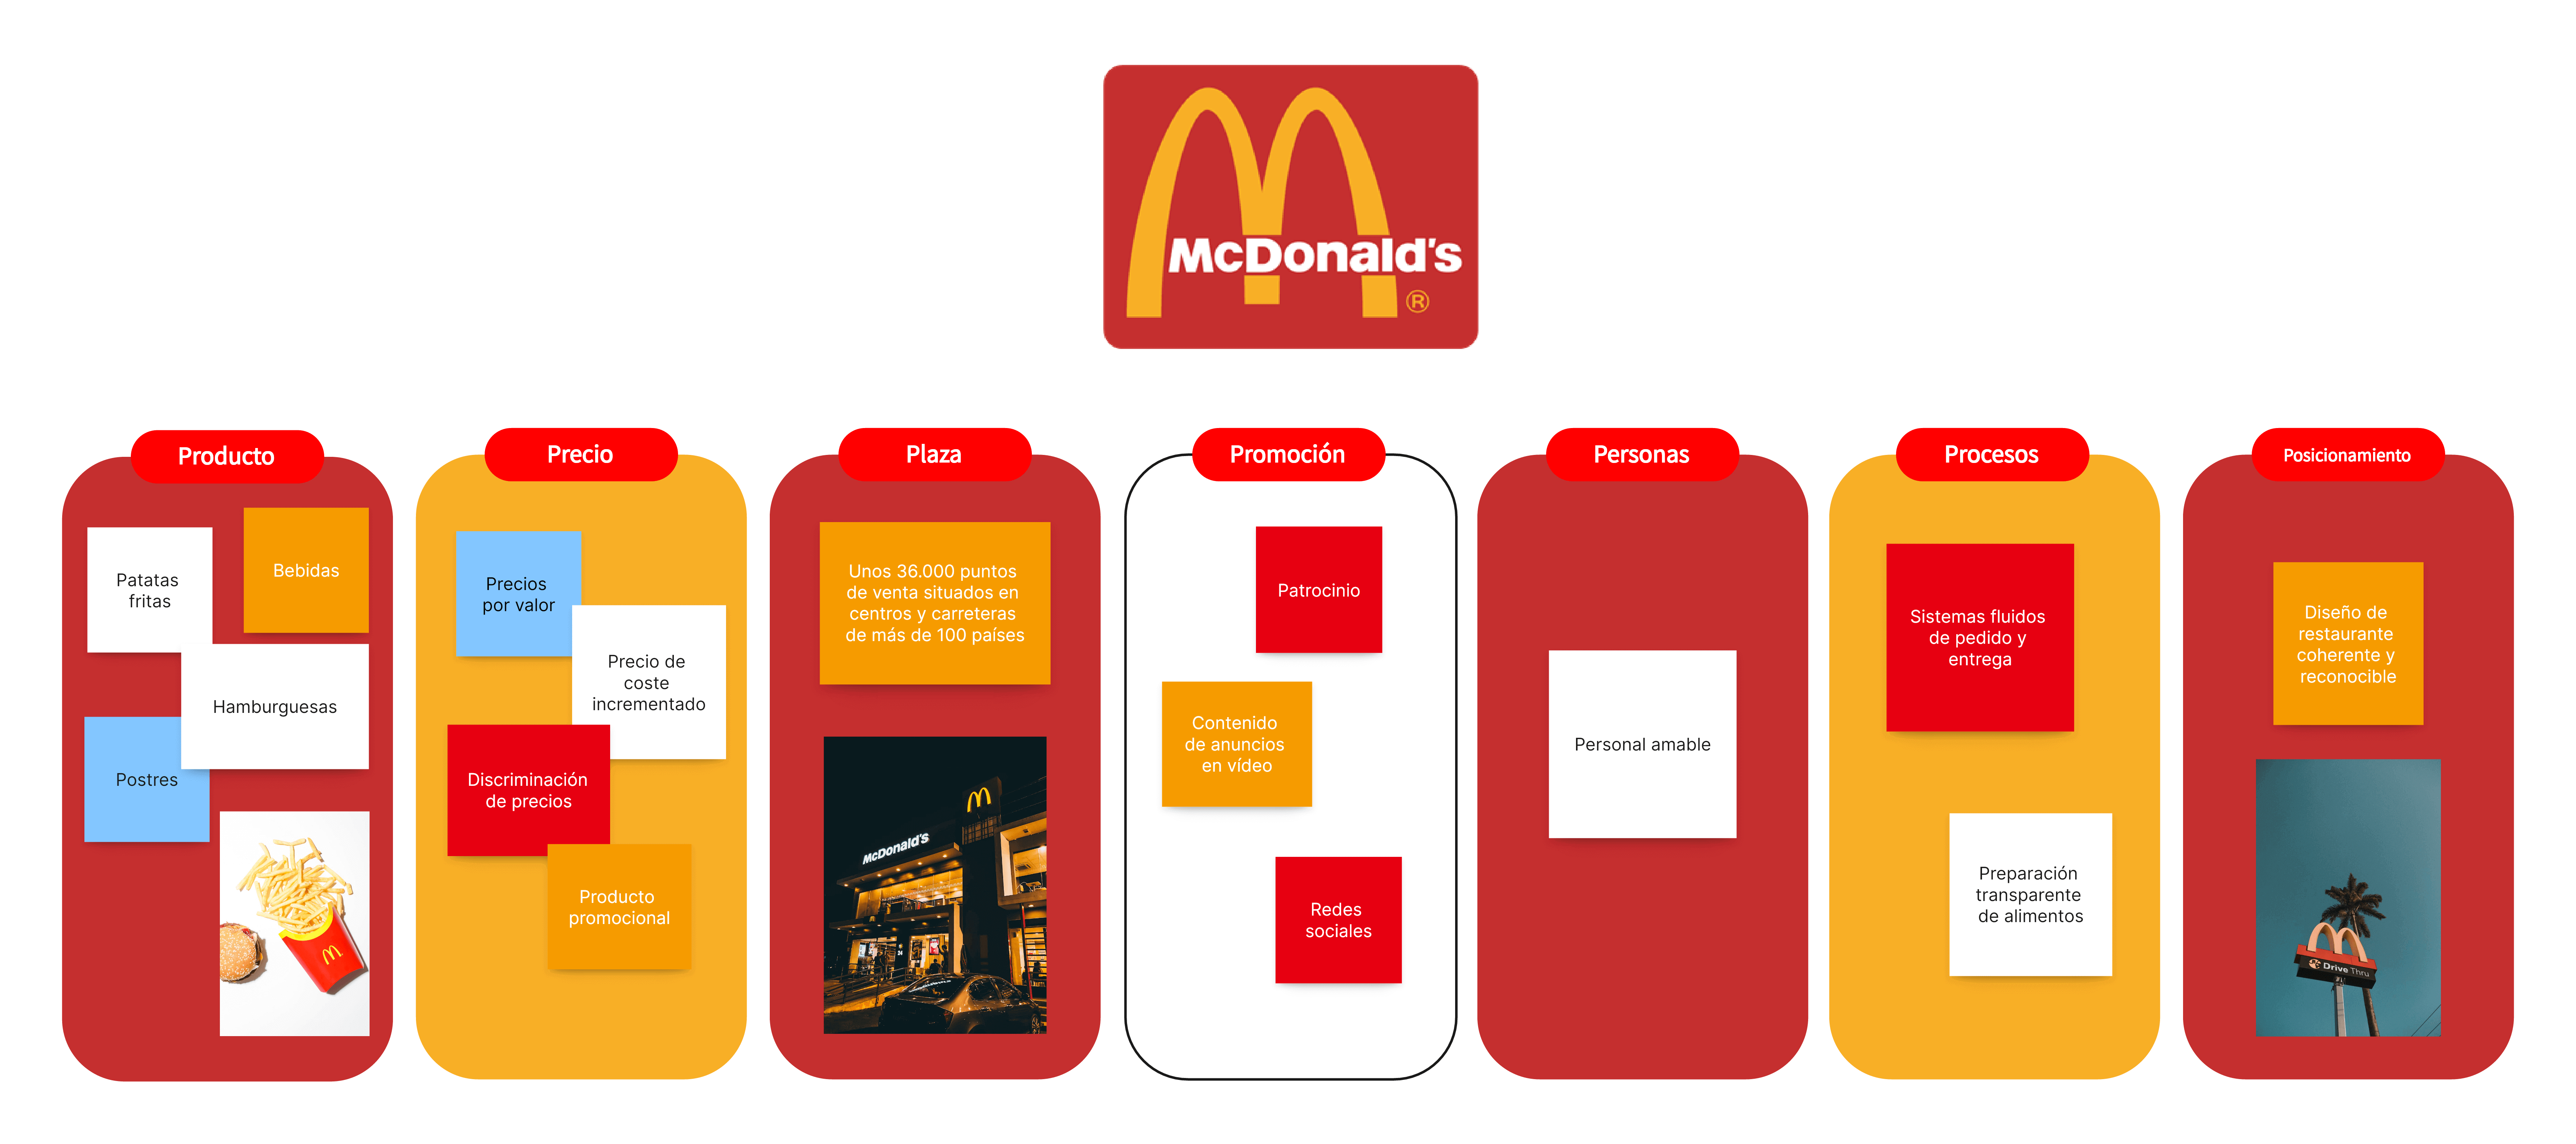 Las 7 P del marketing de McDonald's